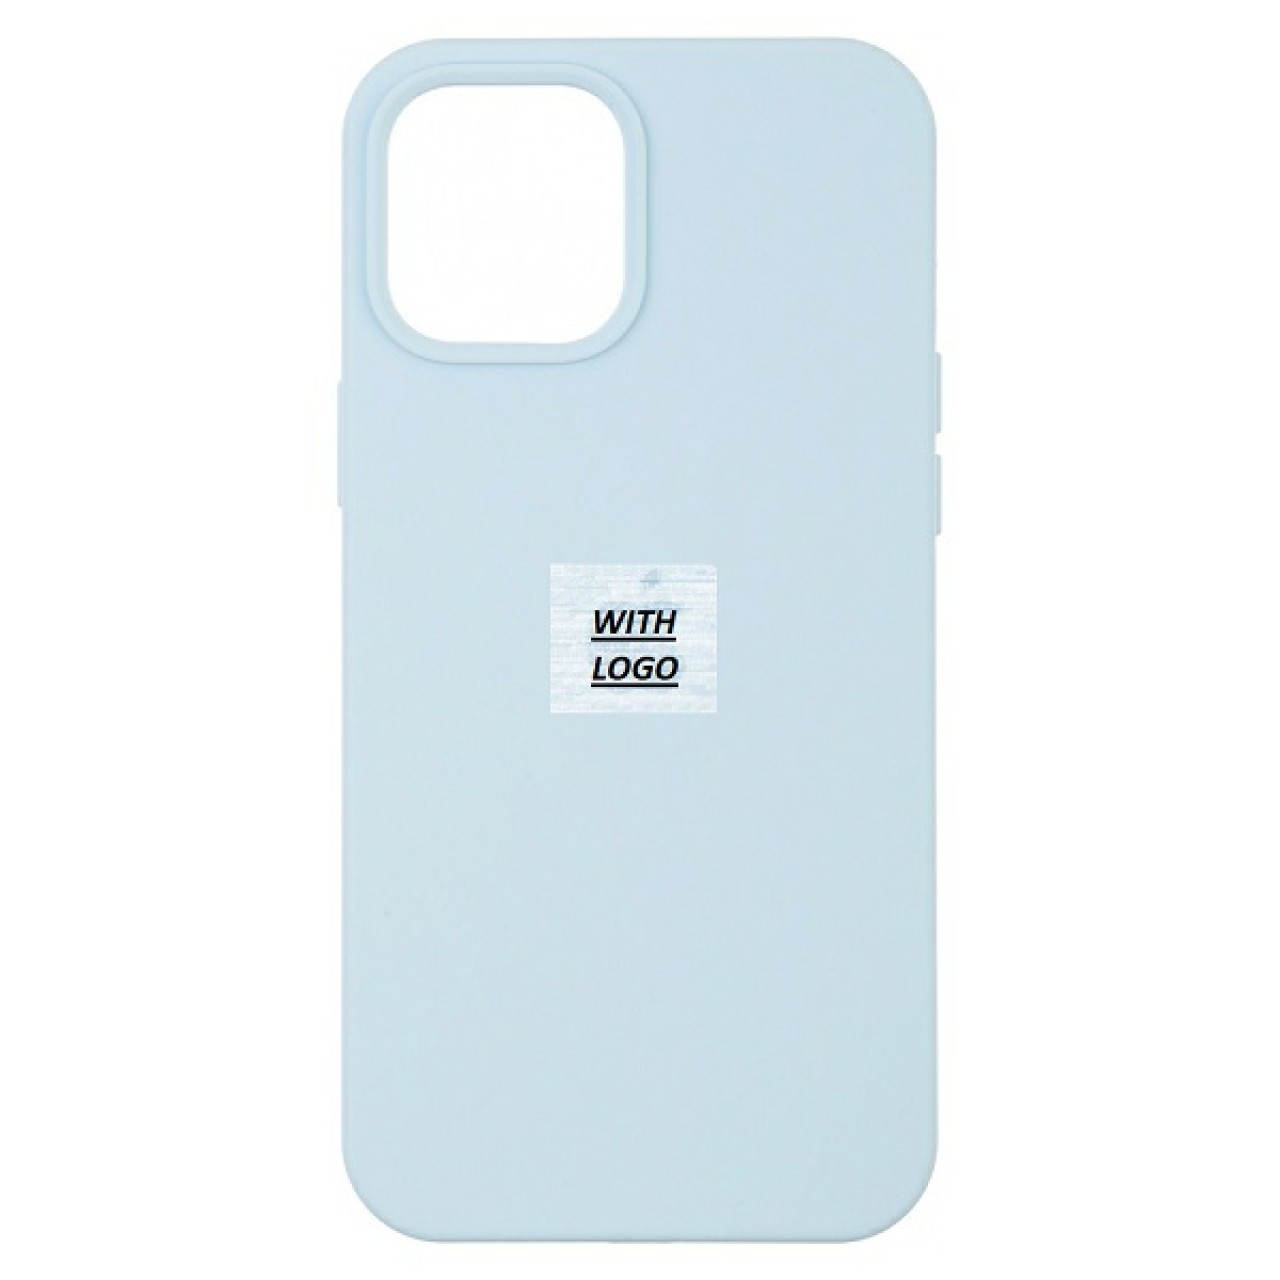 iPhone 12 Mini Θήκη Σιλικόνης - Back Case Silicone Sky Blue